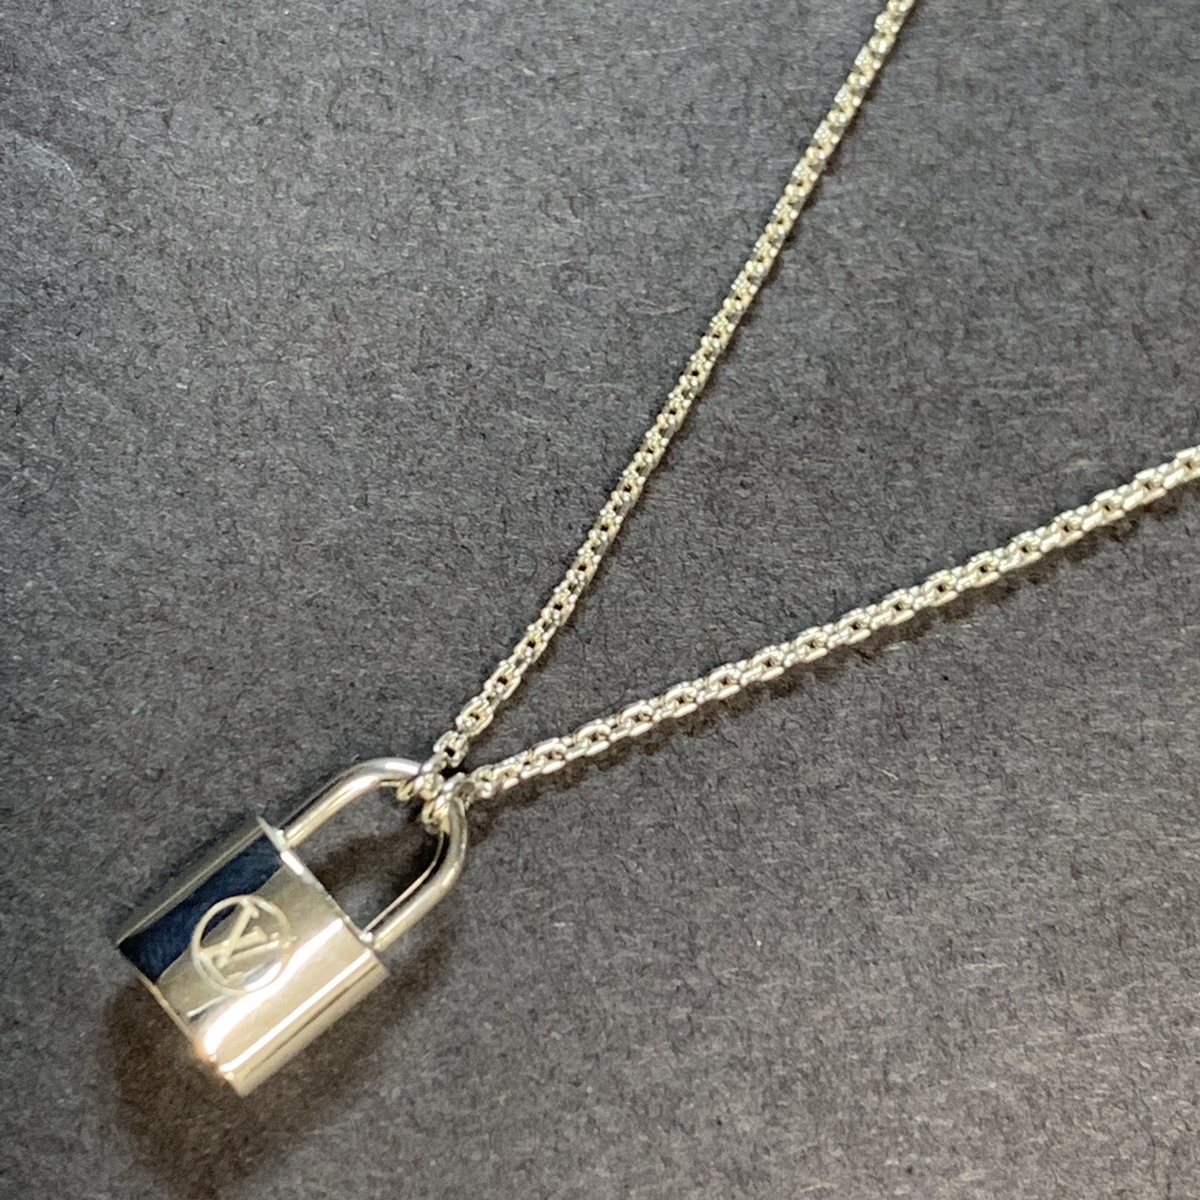 エコスタイル銀座本店で、ルイヴィトンのパンダンティフのロックイットネックレスを買取ました。 買取価格・実績 2019年8月30日公開情報